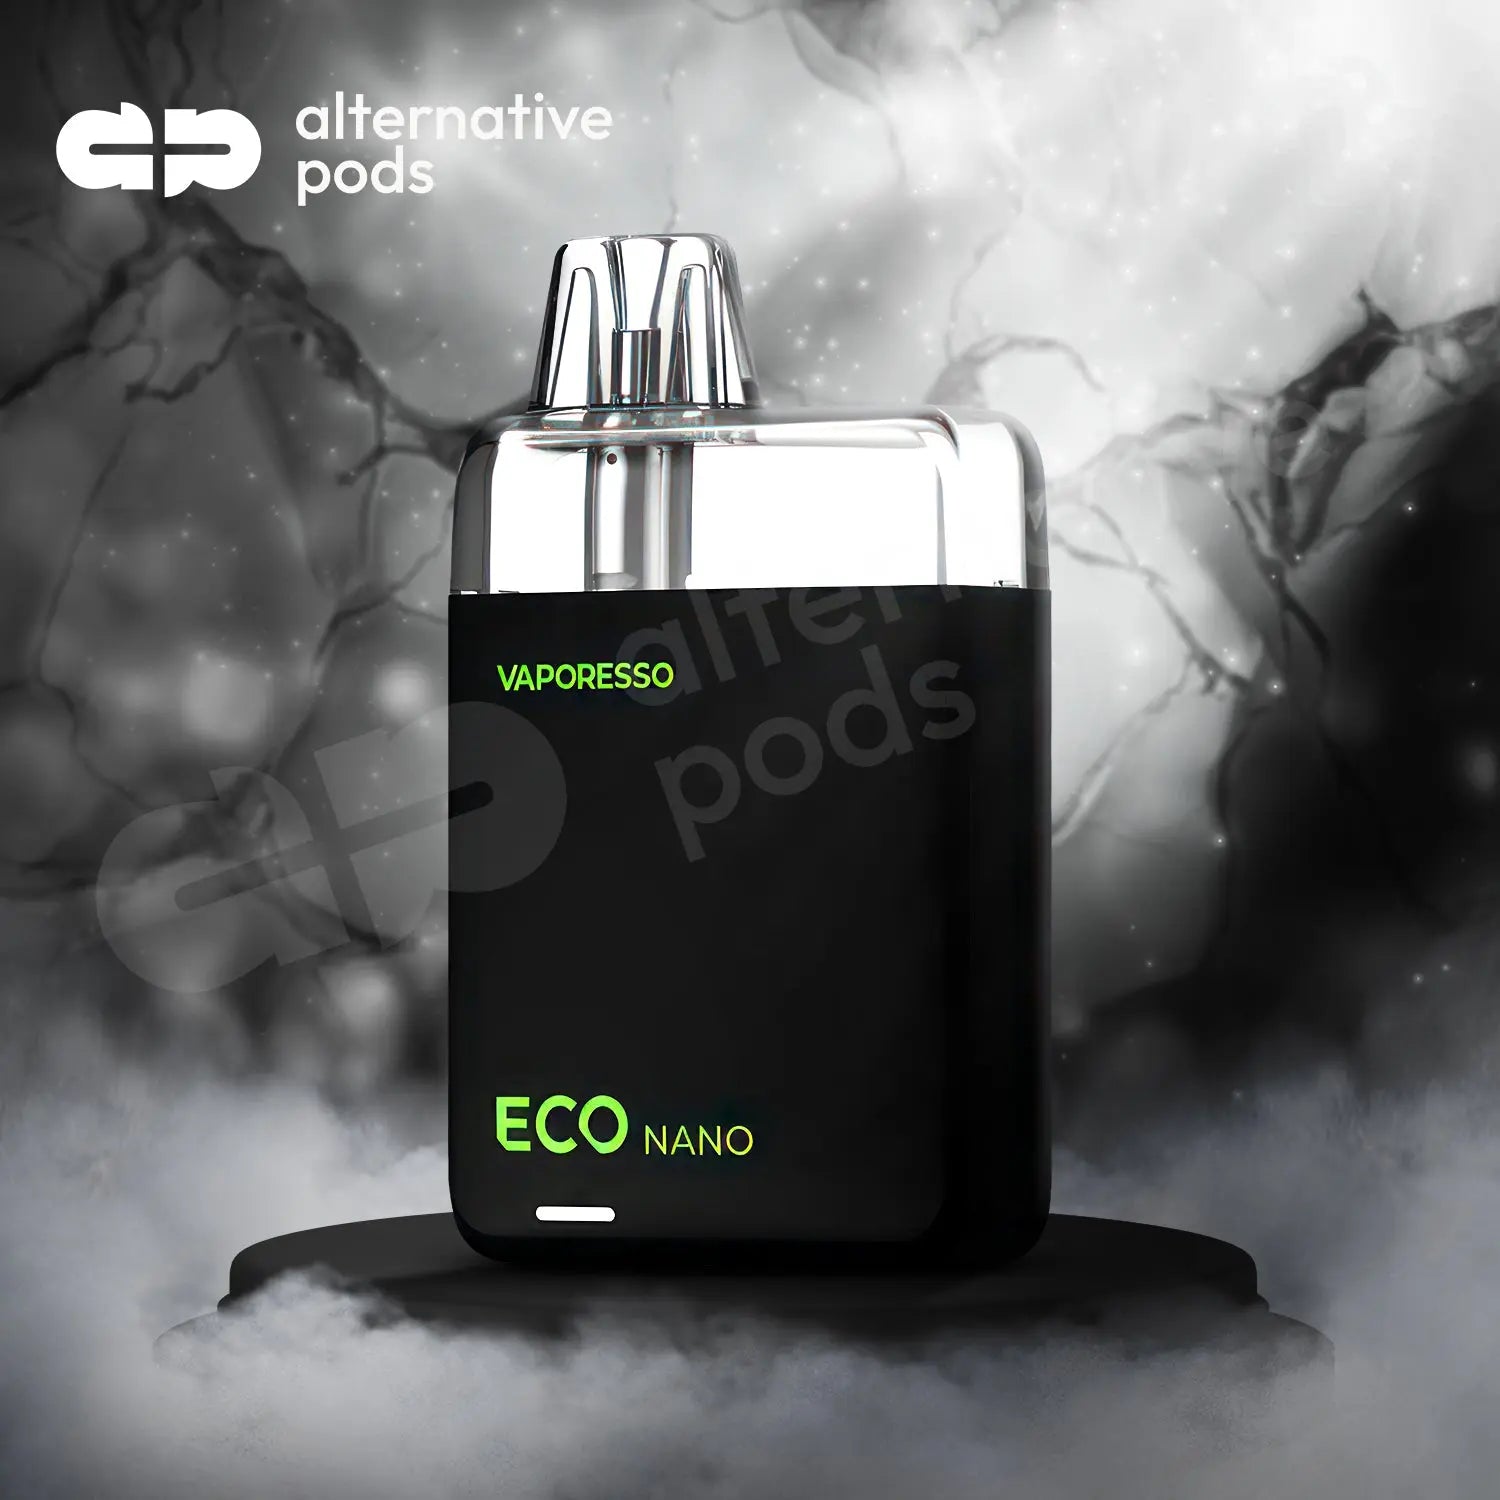 Vaporesso ECO NANO 1000mAh Pod System Starter Kit With Refillable 6ML Pod - Alternative pods | Online Vape & Smoke Shop